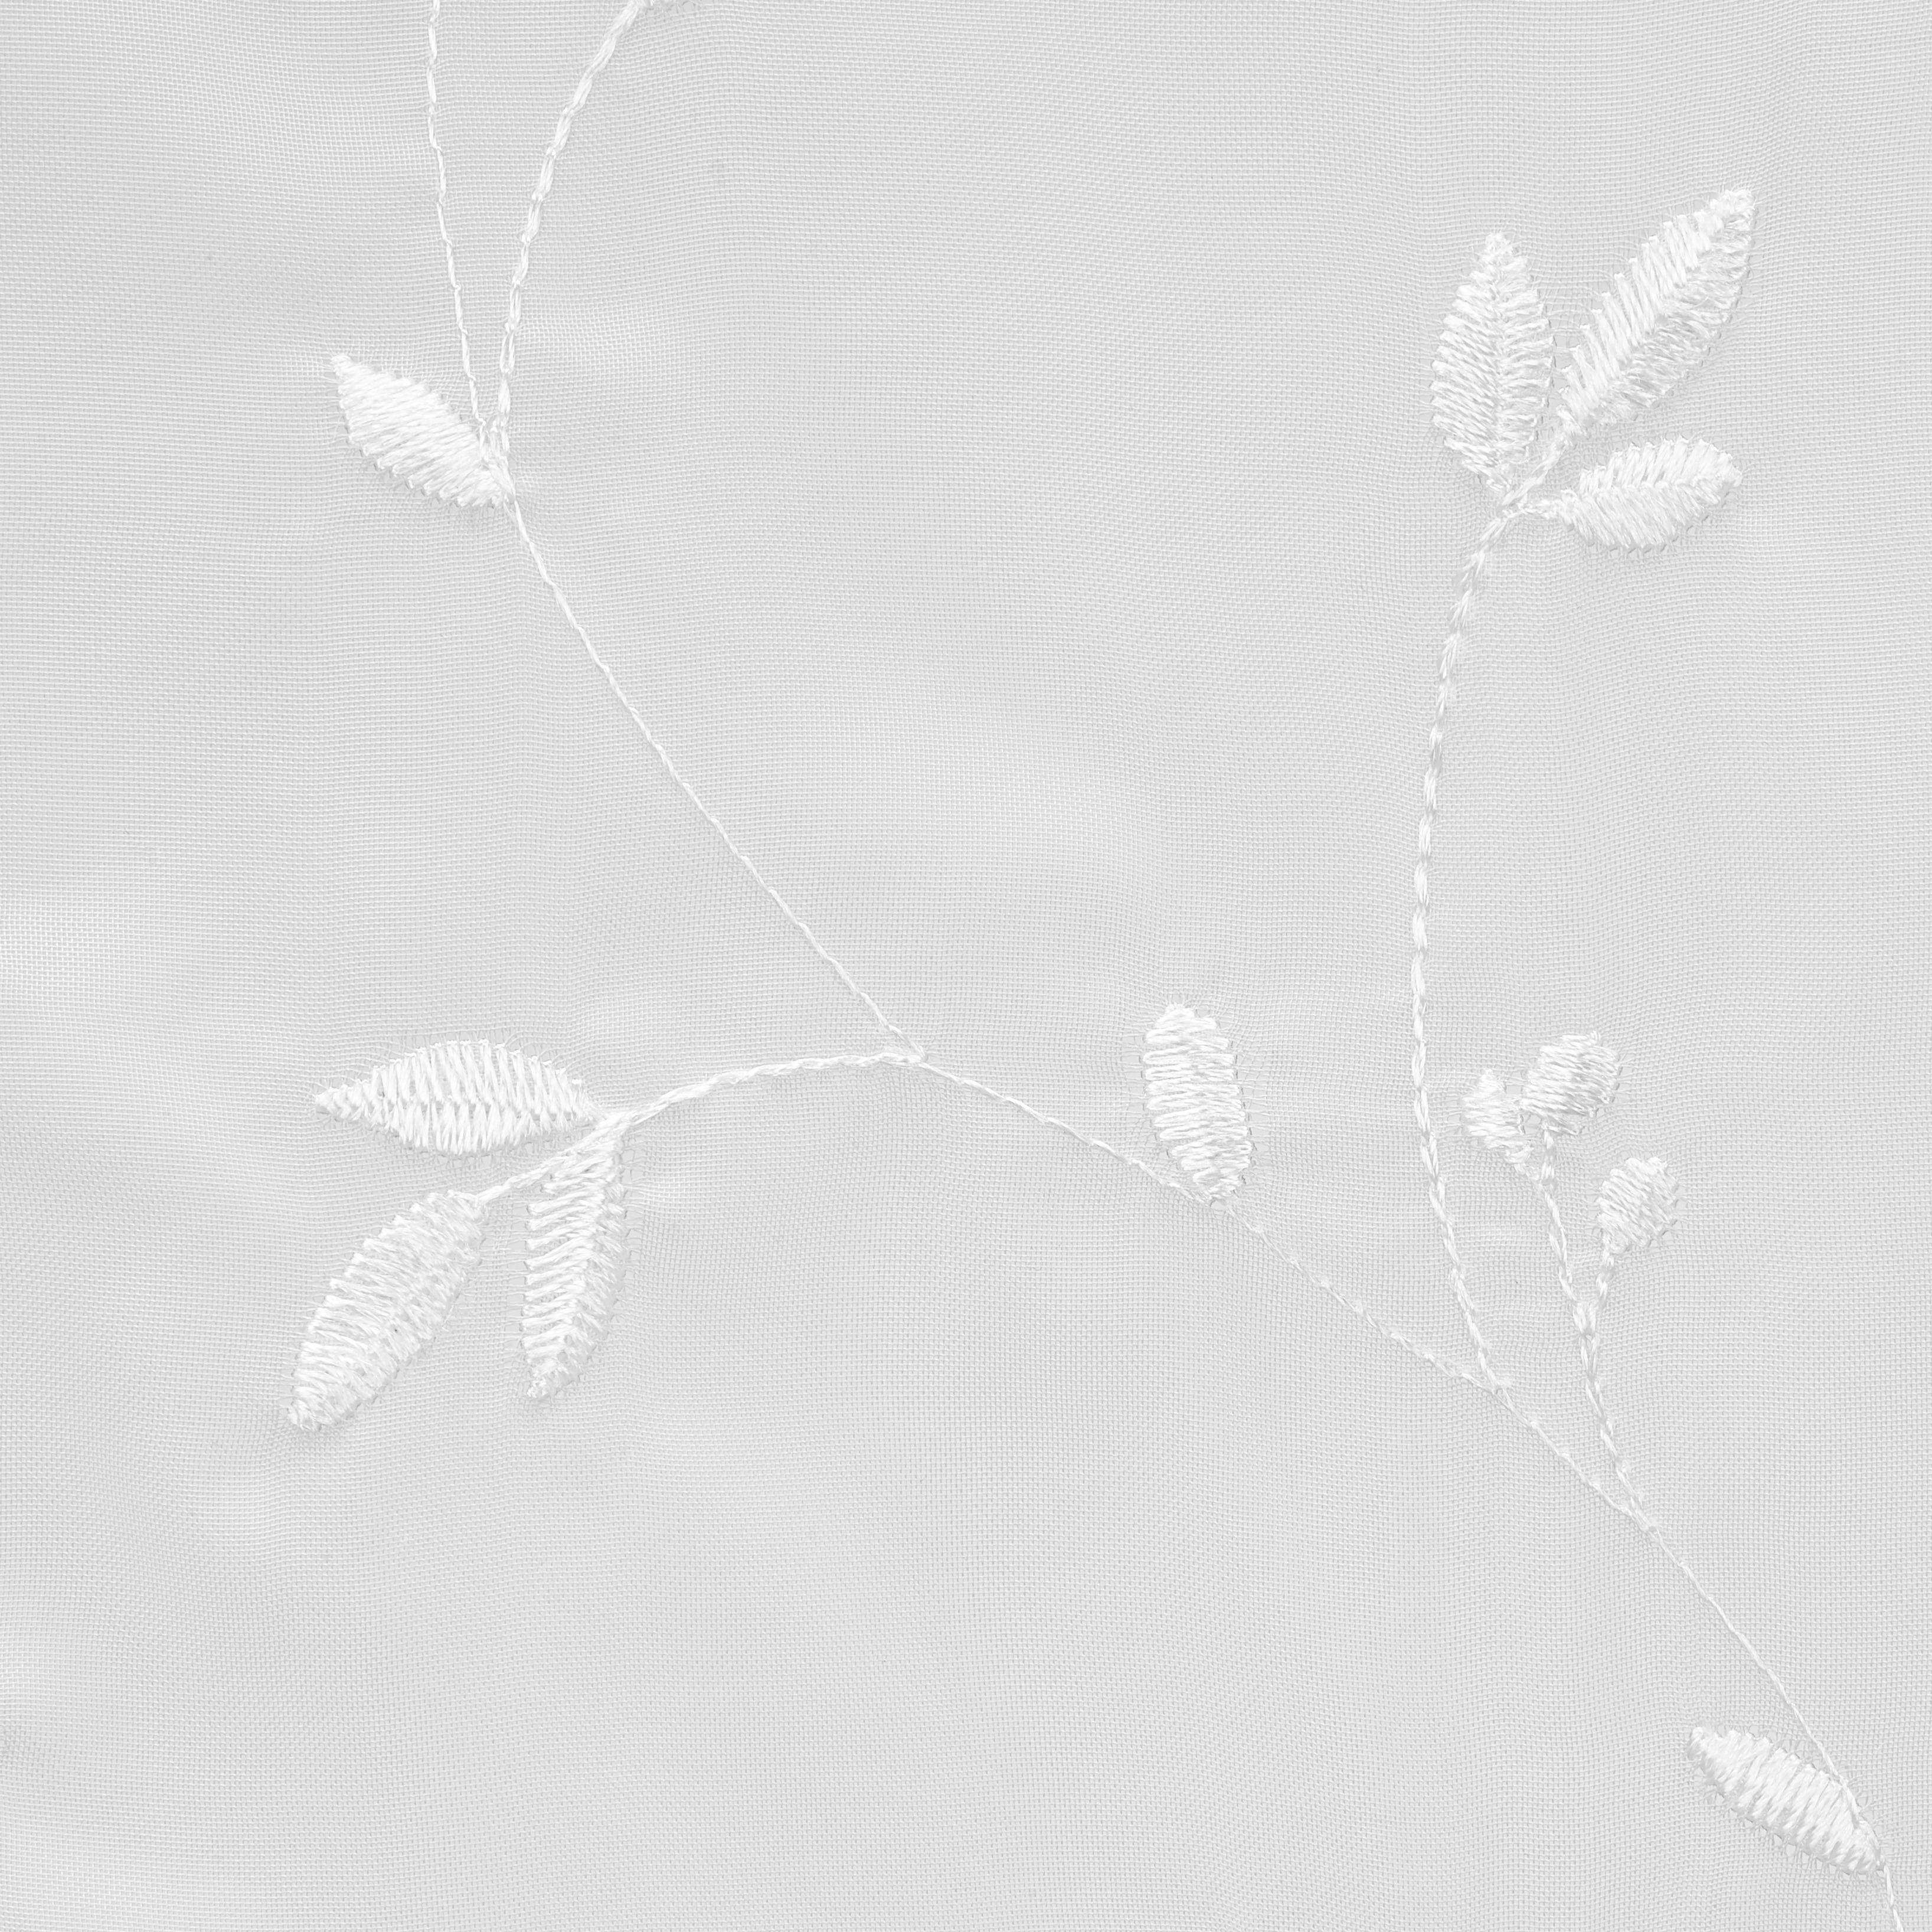 Bändchenrollo Romantic in Weiß ca. 60x140cm - Weiß, ROMANTIK / LANDHAUS, Textil (60/140cm) - Modern Living